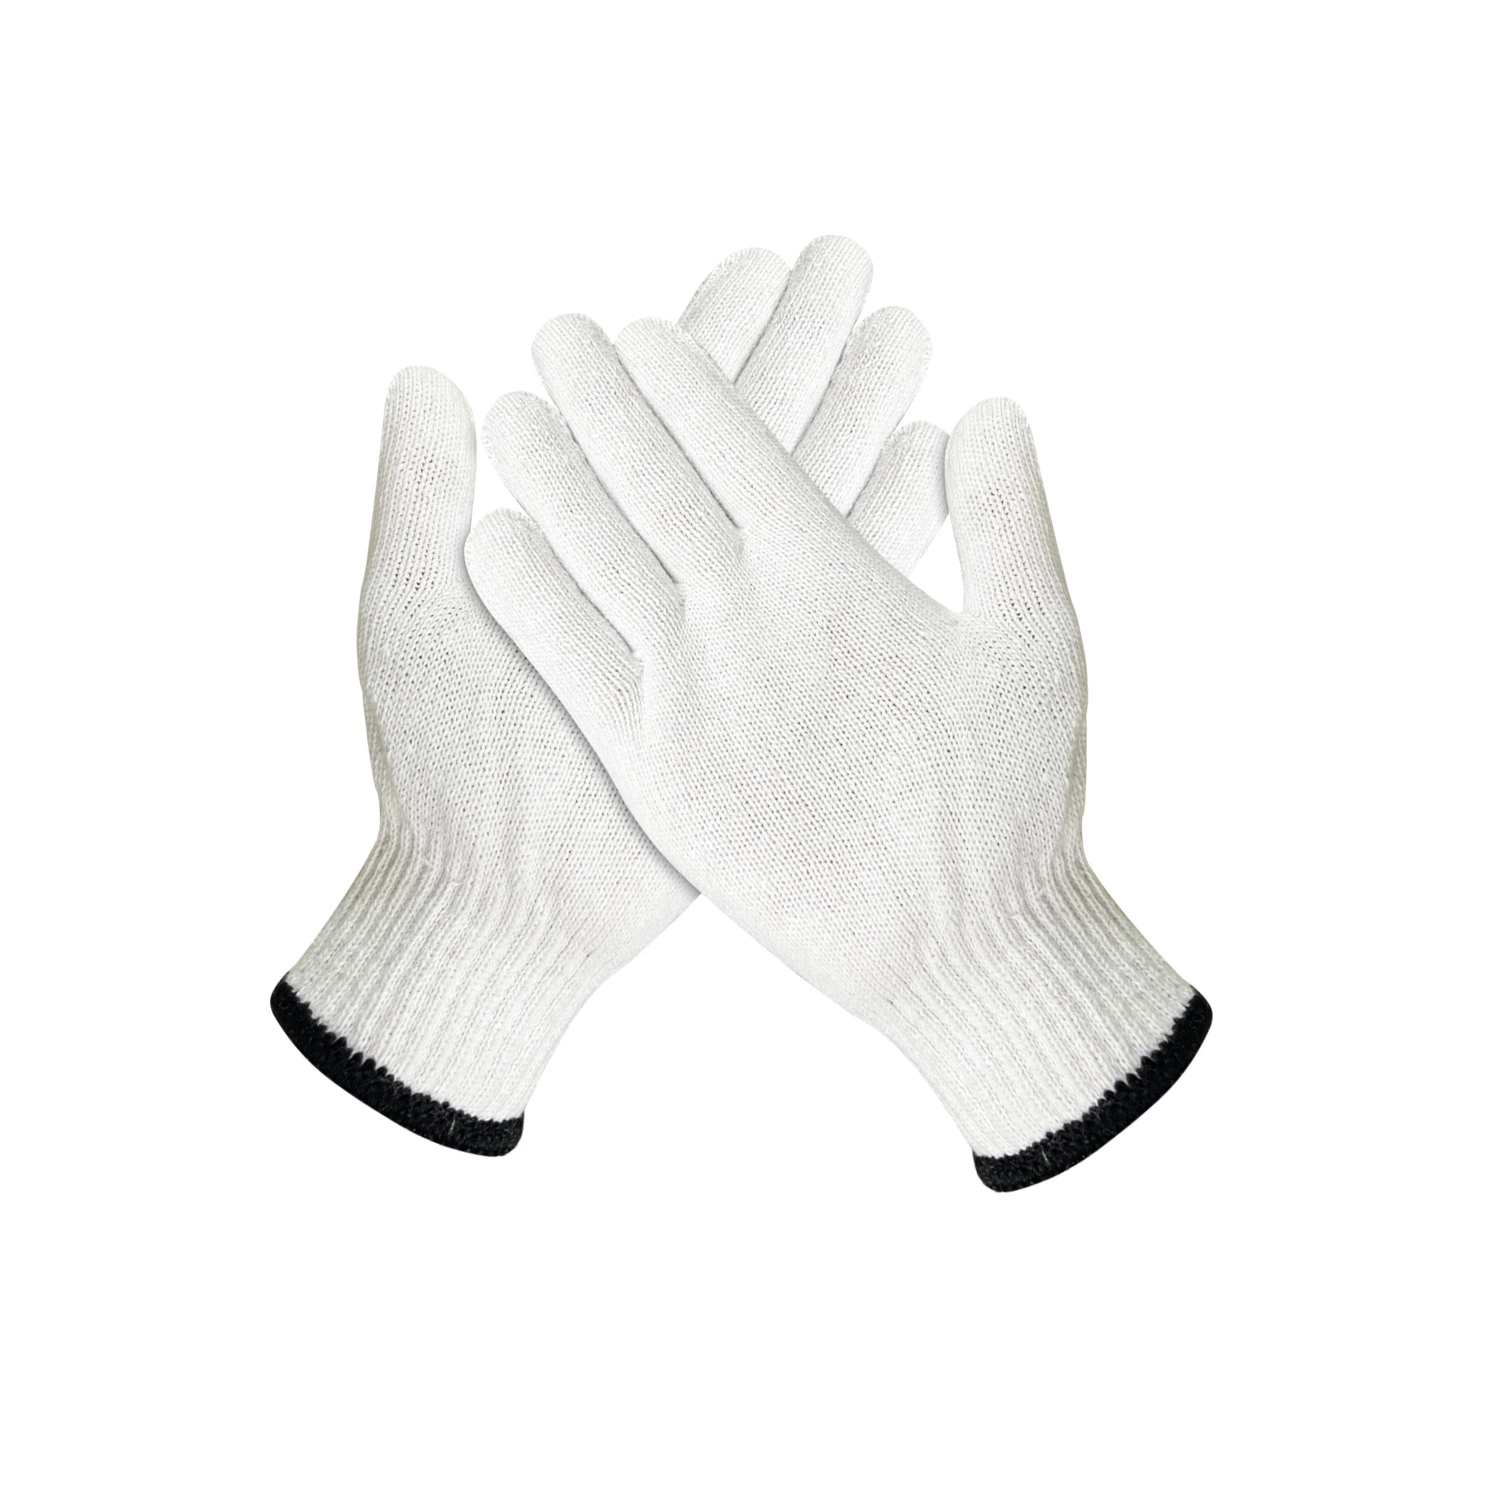 China Großhandel/Lieferant 30-70g/Paar Hand Guantes Sicherheit Arbeitshandschuh Baumwolle gestrickt Handschuhe